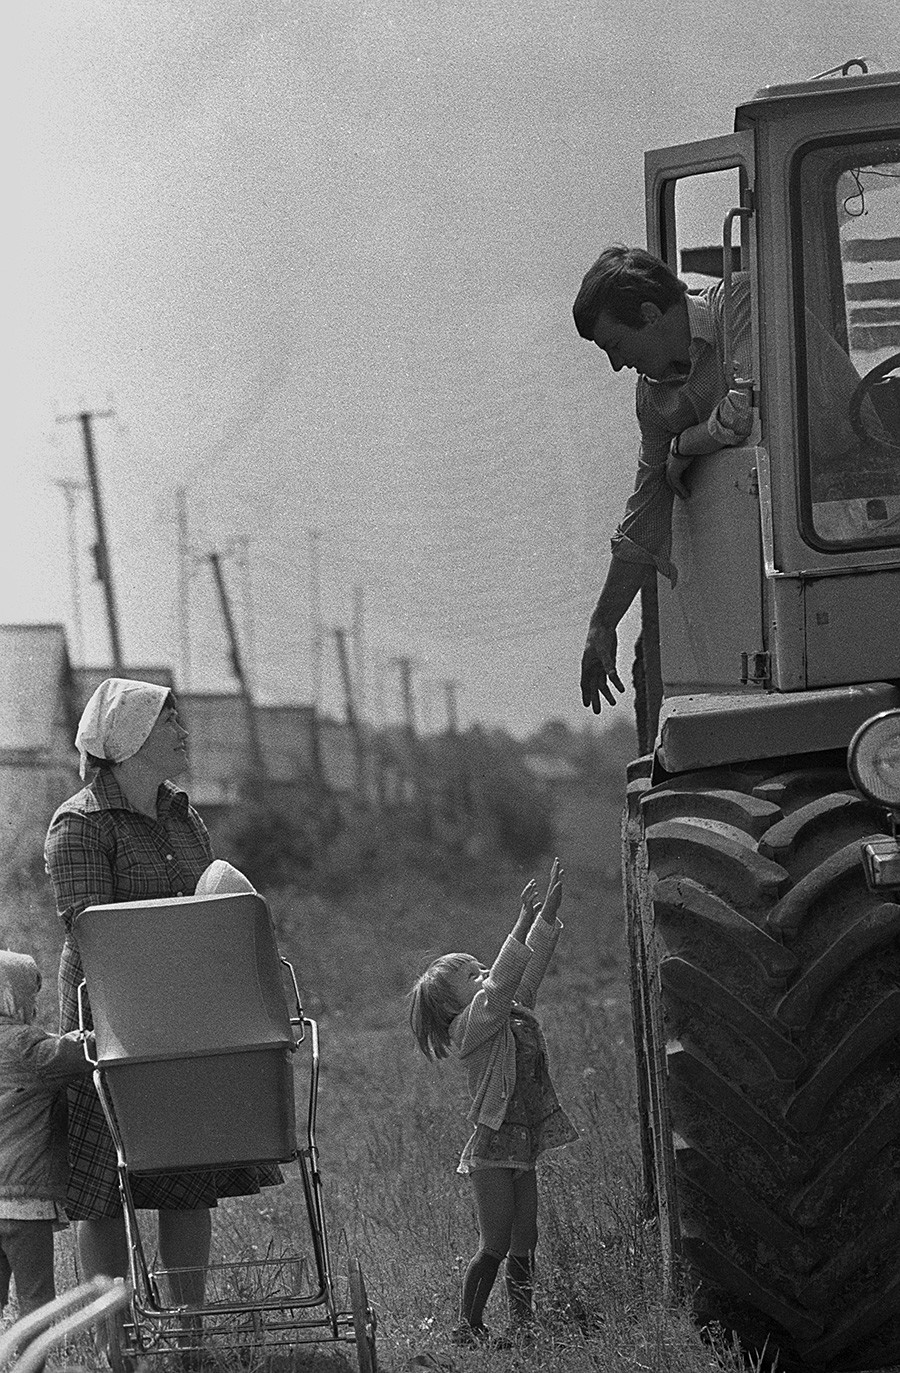 Un agriculteur de kolkhoze revient chez lui après son travail au champ, 1987

